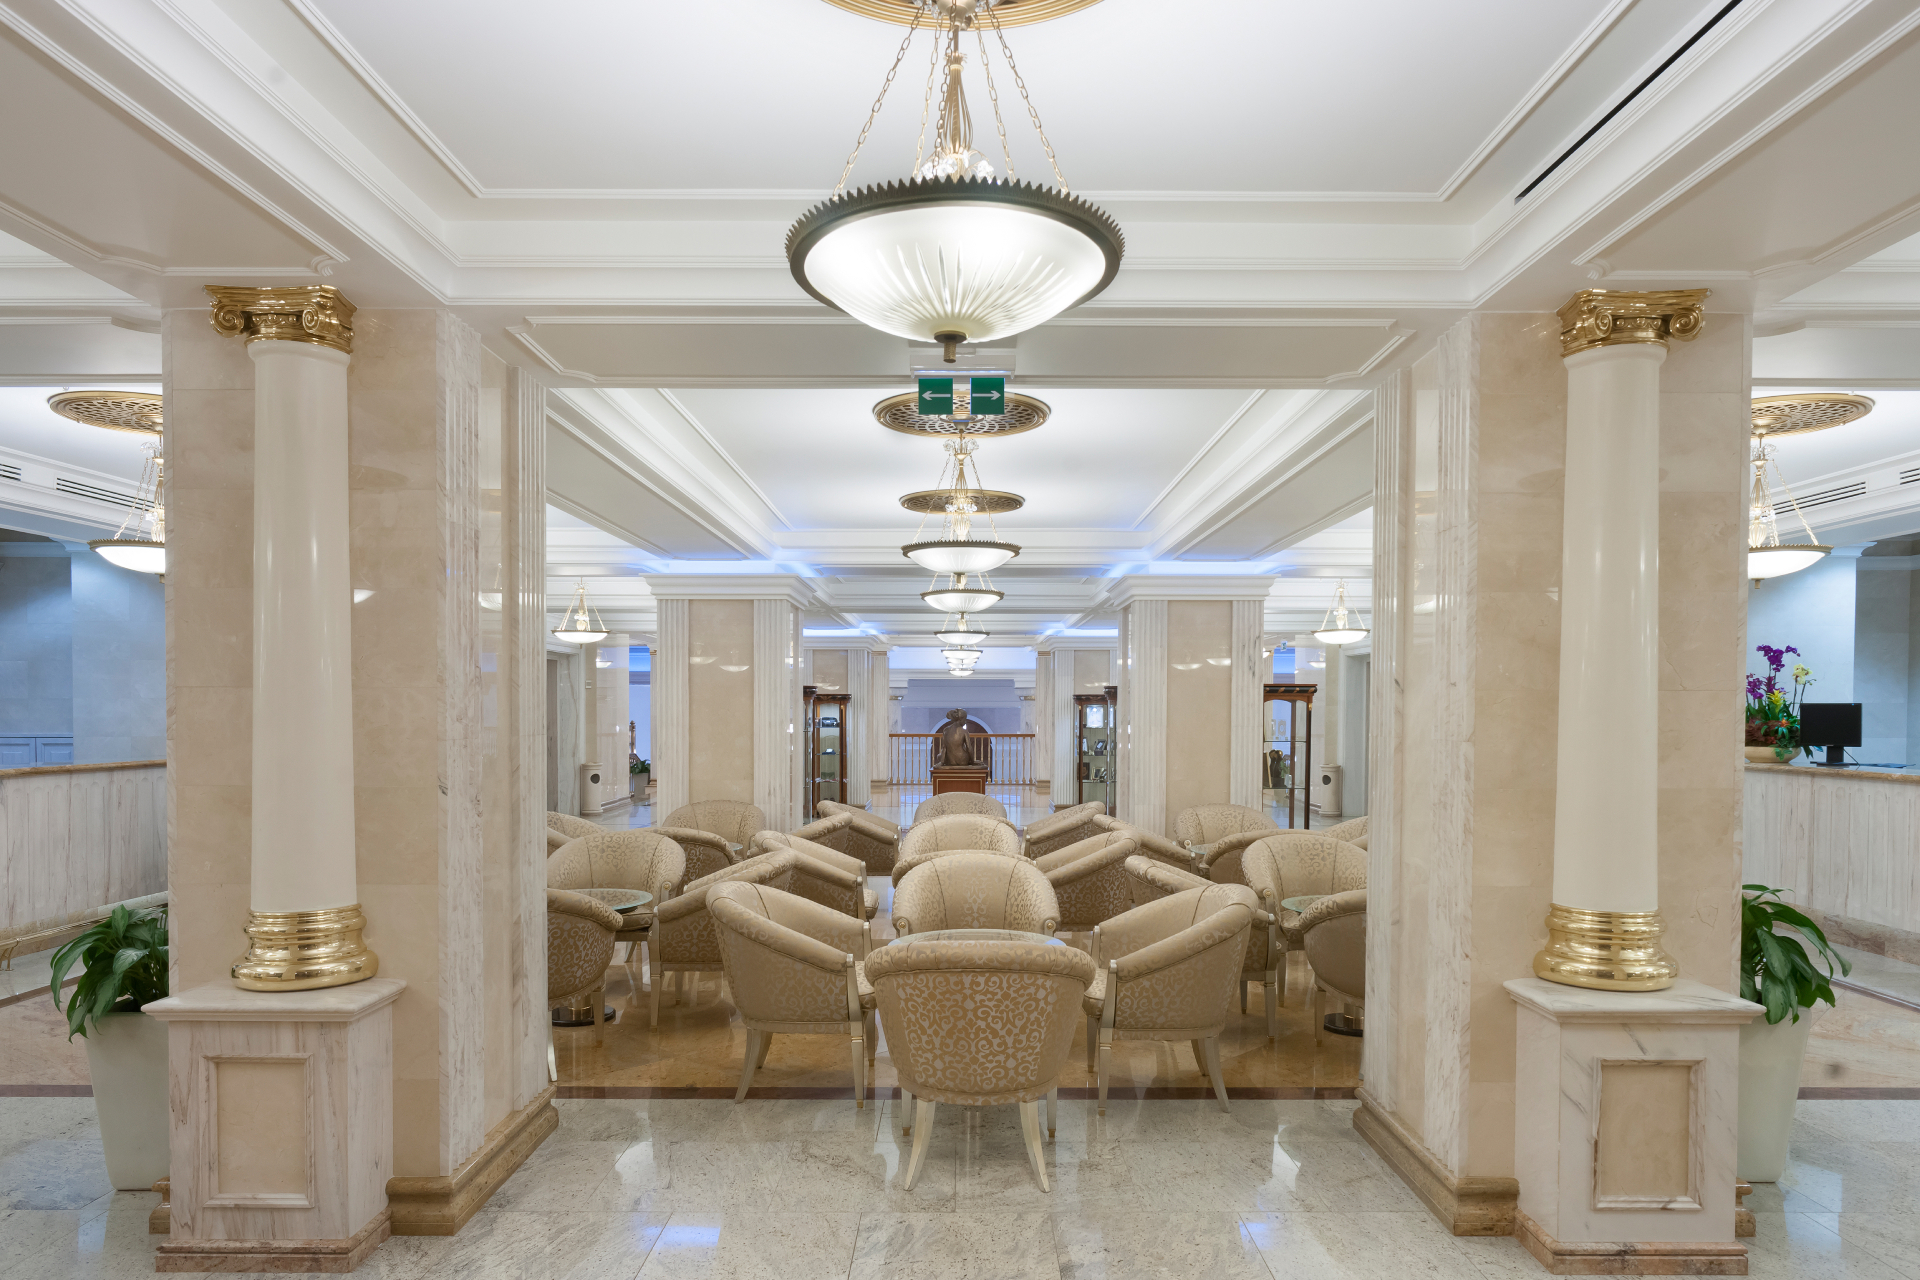 гостиница украина банкетный зал